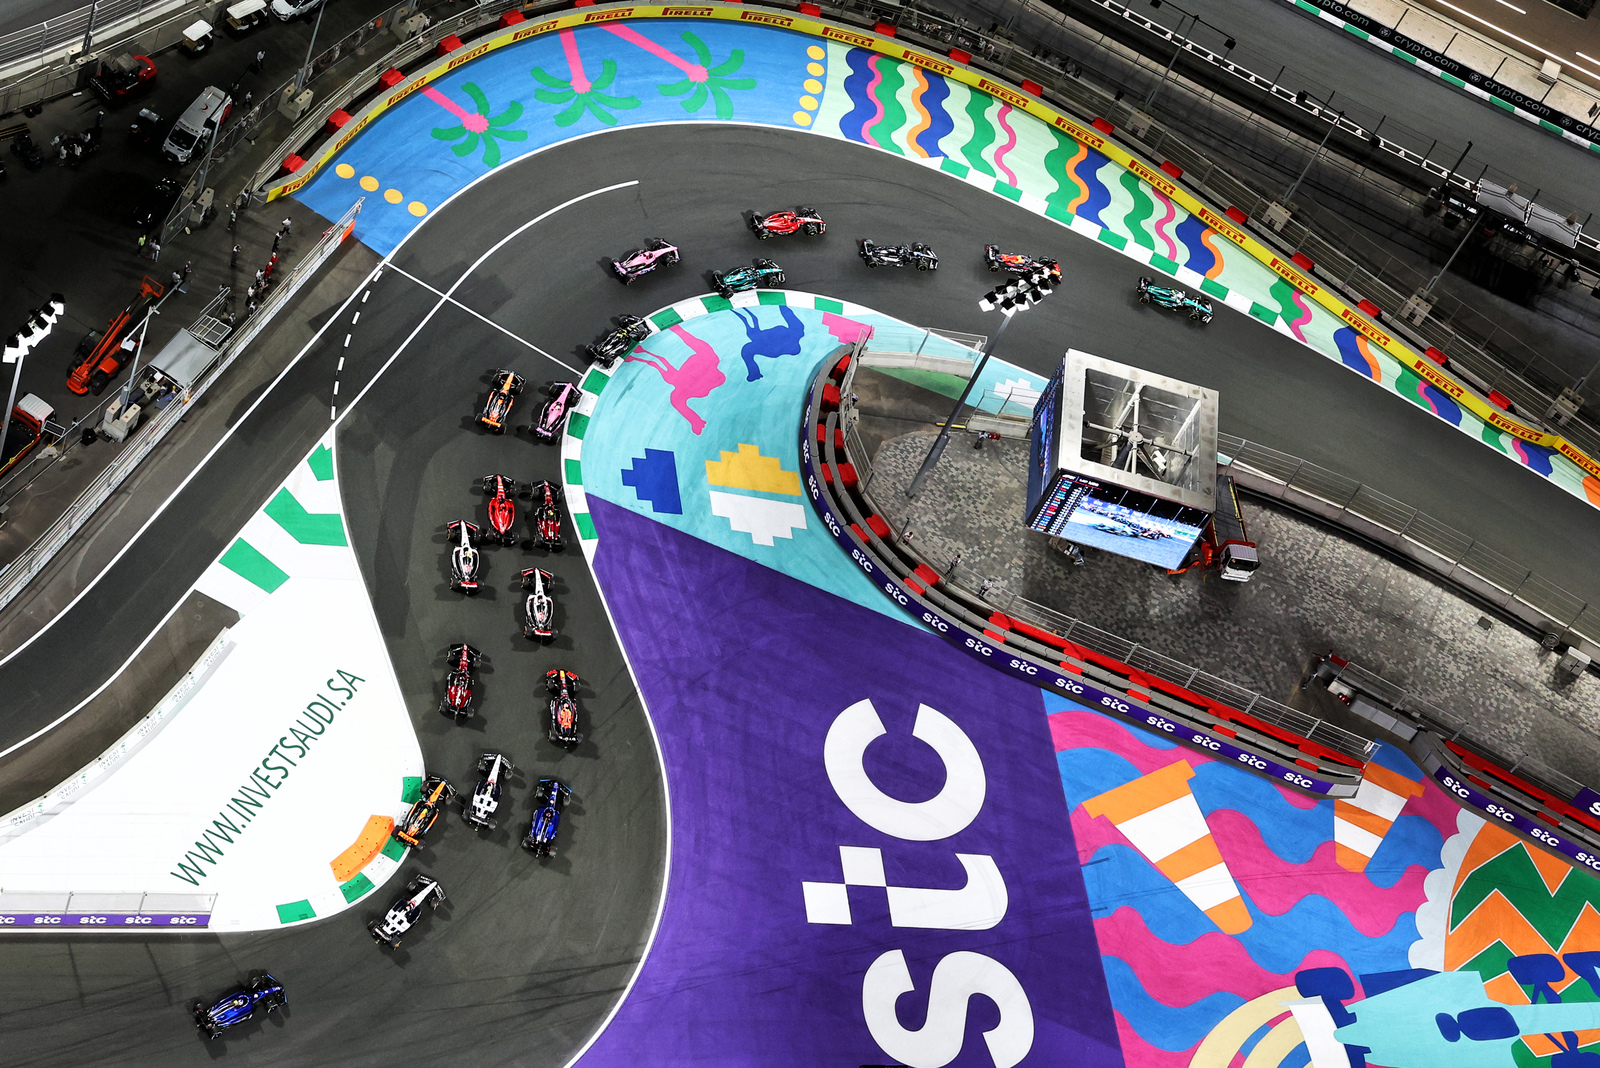 Motor Racing Formula One World Championship Saudi Arabian Grand Prix Race Day Jeddah, Saudi Arabia